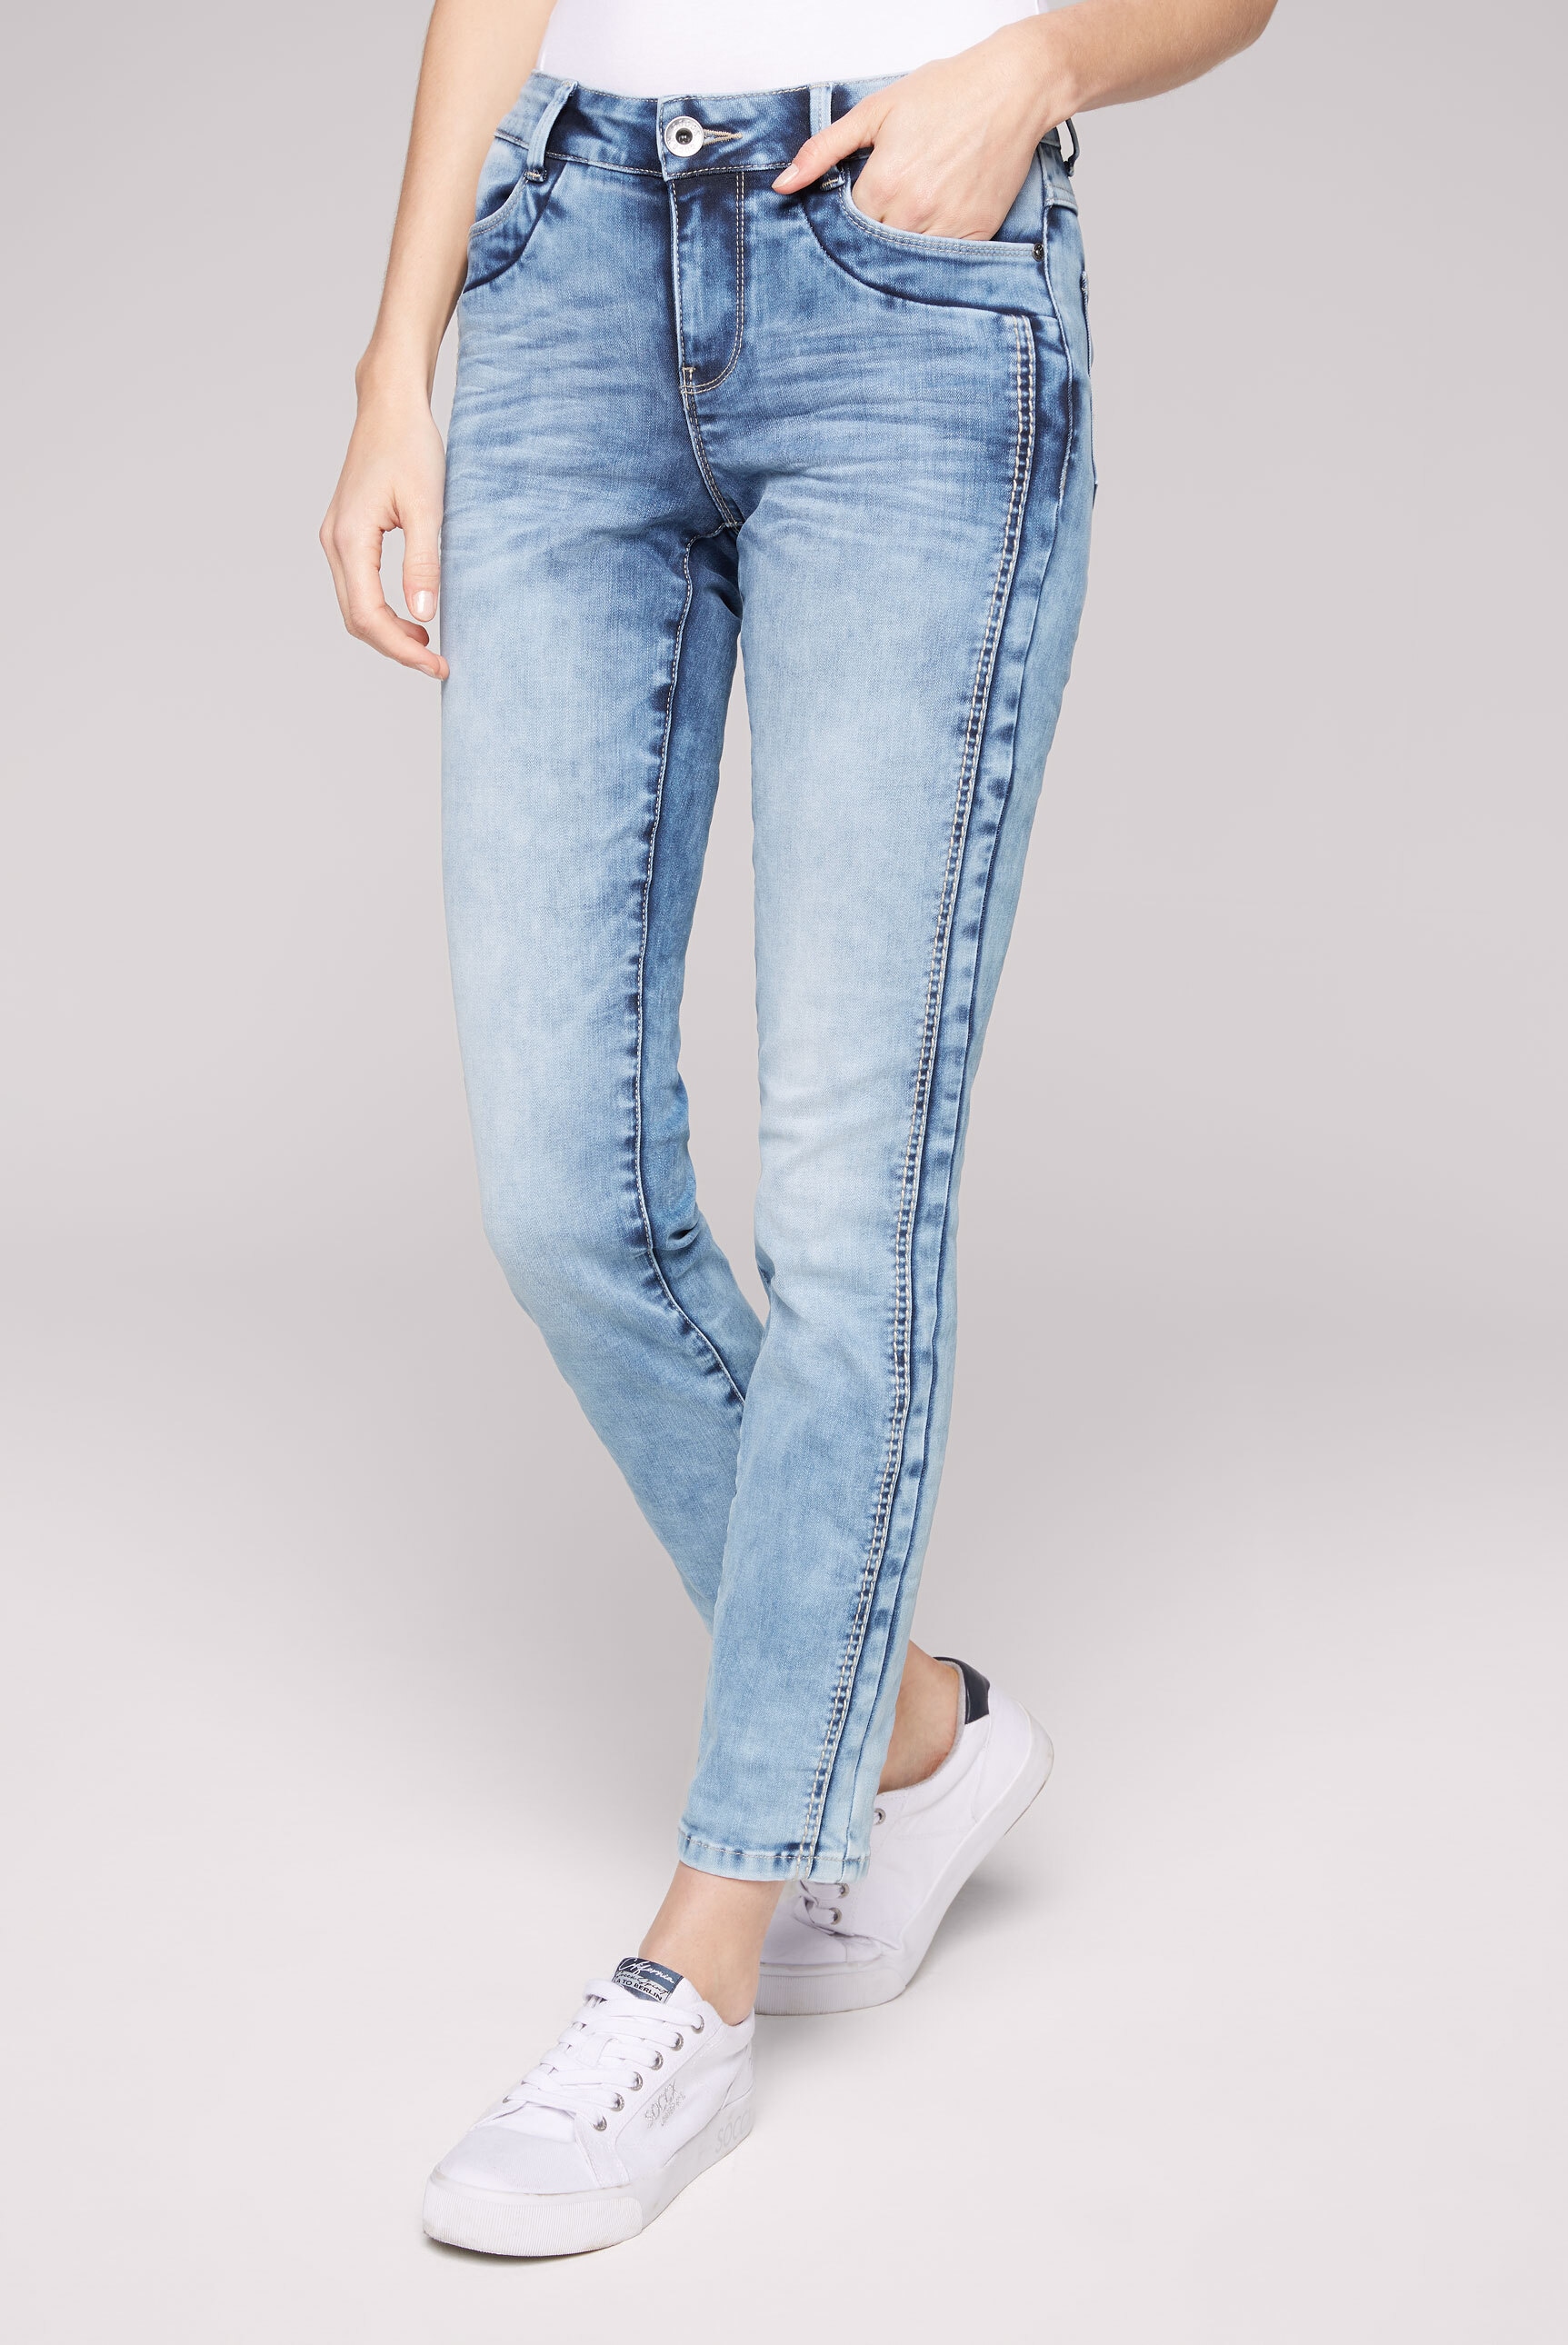 kaufen mit verkürztem SOCCX Comfort-fit-Jeans, Bein